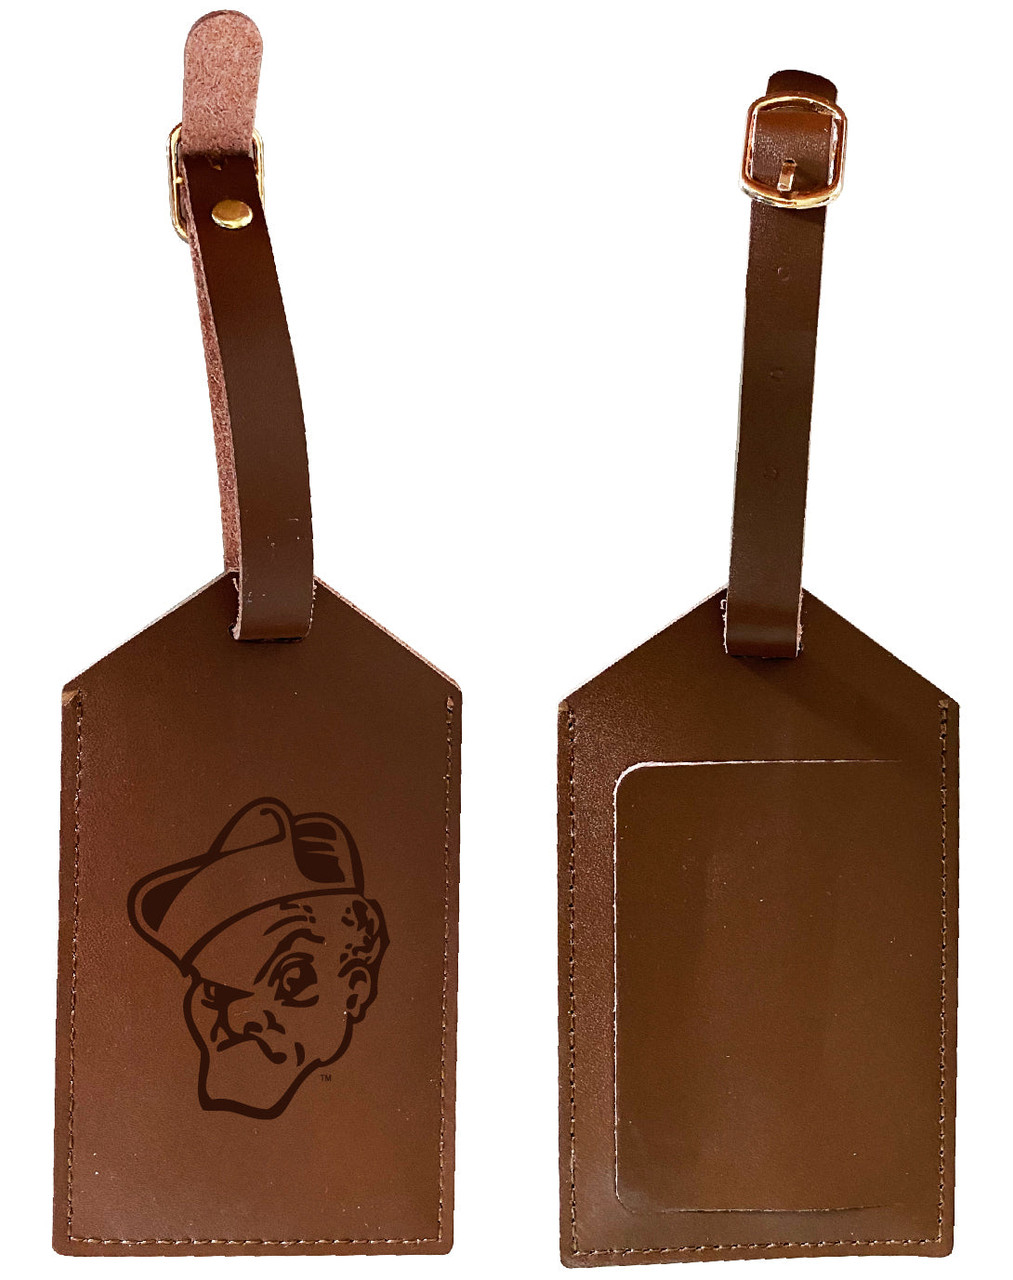 Ohio Wesleyan University Leather Luggage Tag Engraved